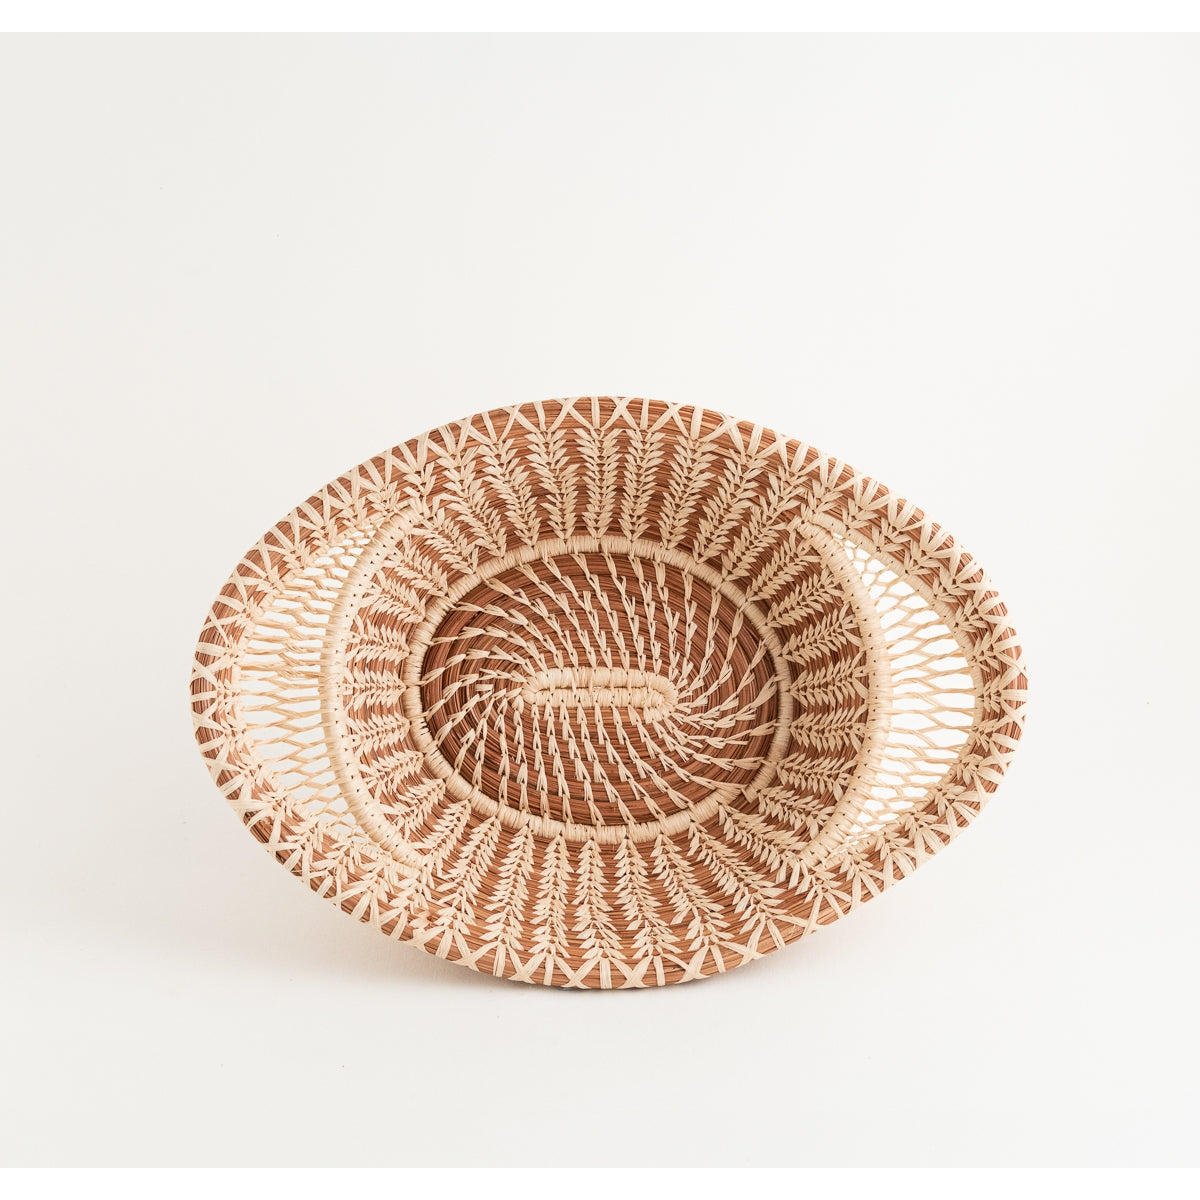 Mayan Basket - Raffia Lace